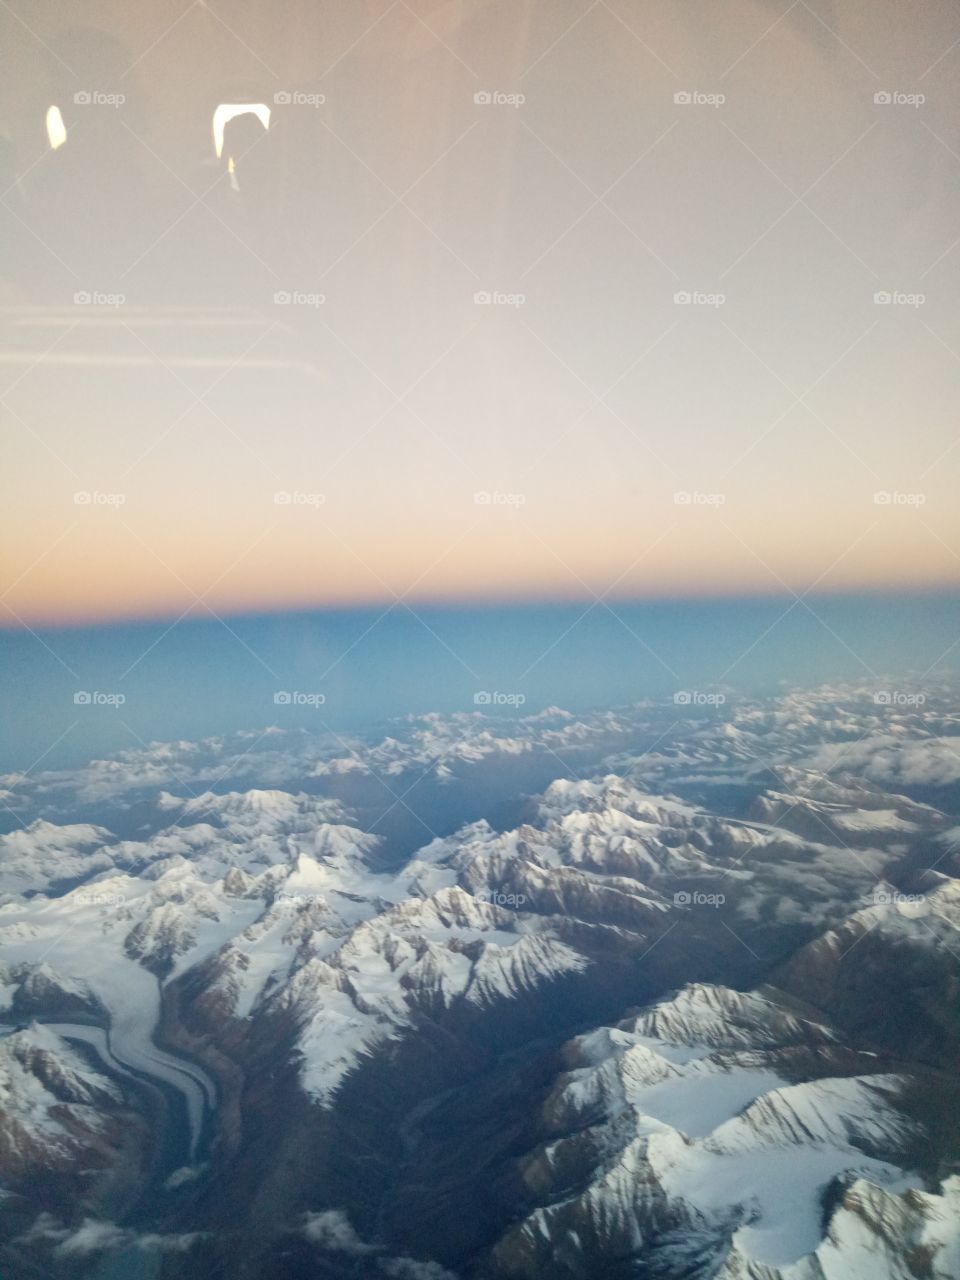 Above Pir Punjab Himalayan range